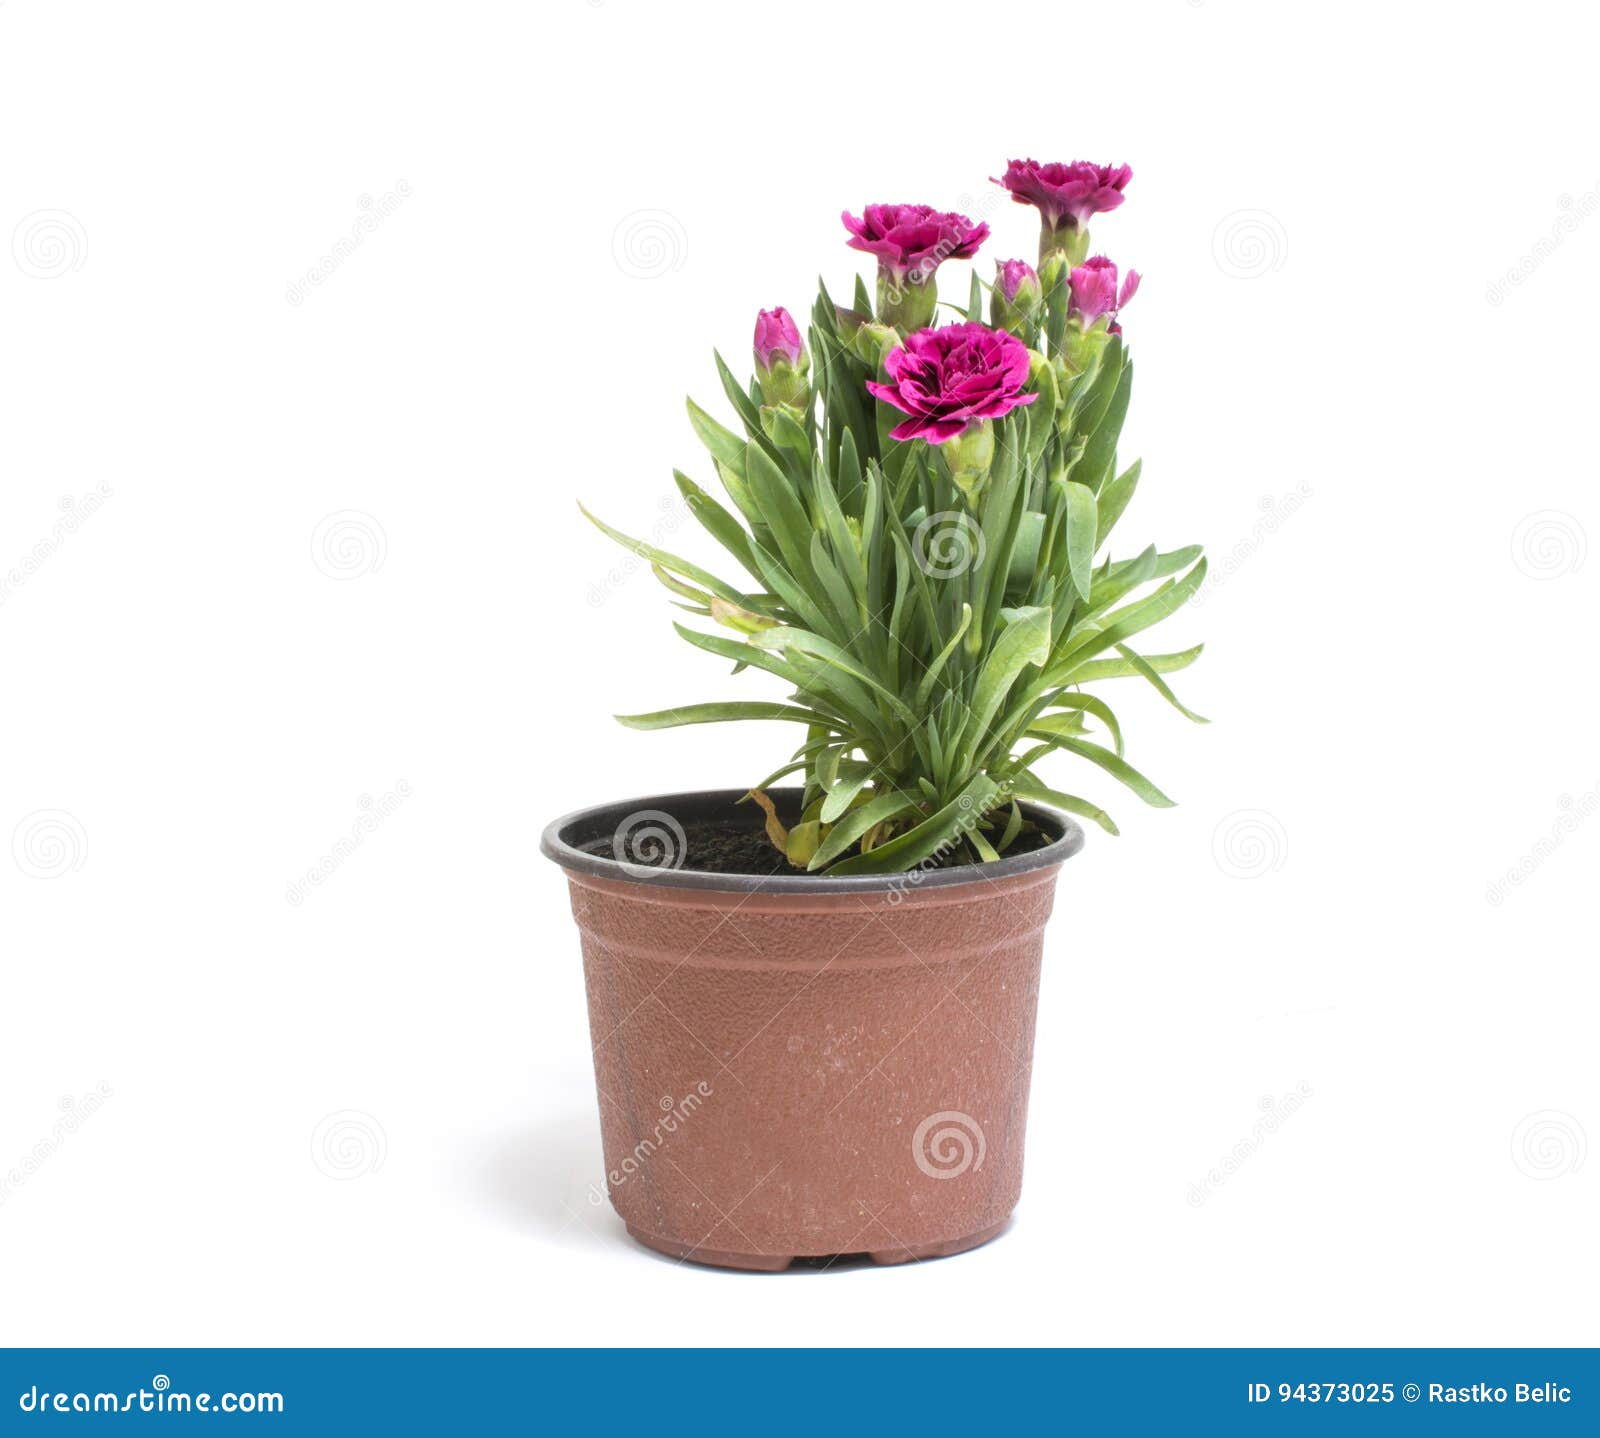 O Cravo Pequeno Floresce No Vaso De Flores Isolado No Backgroun Branco  Imagem de Stock - Imagem de objeto, flor: 94373025